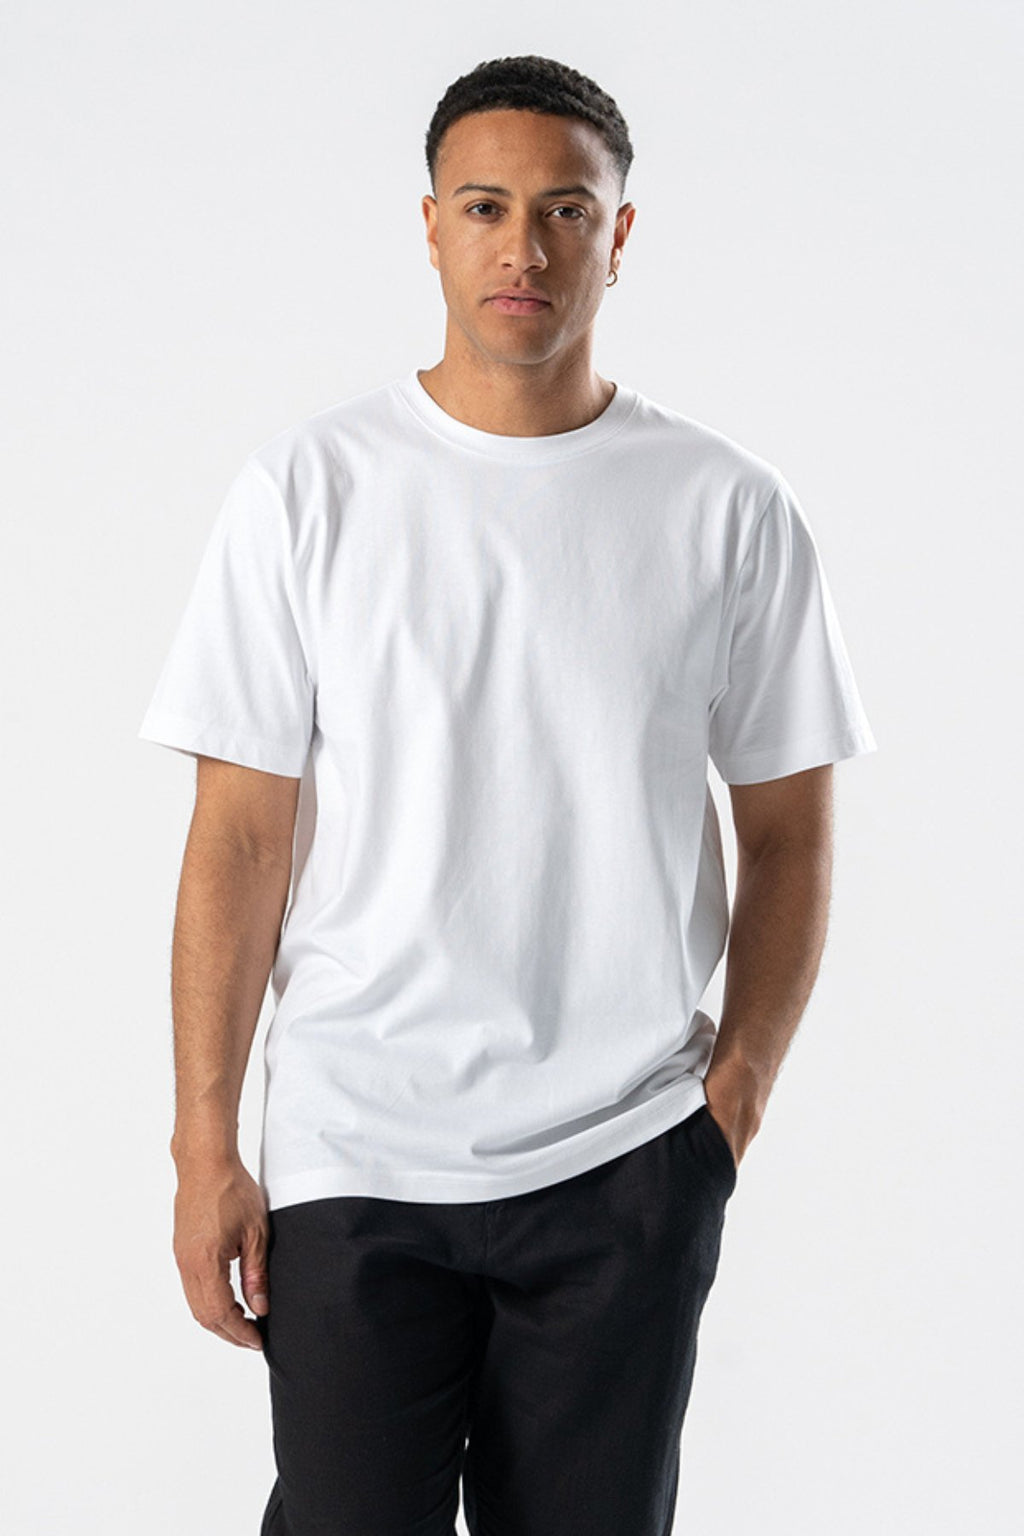 Camiseta Boxfit - Paquete (3 uds.)